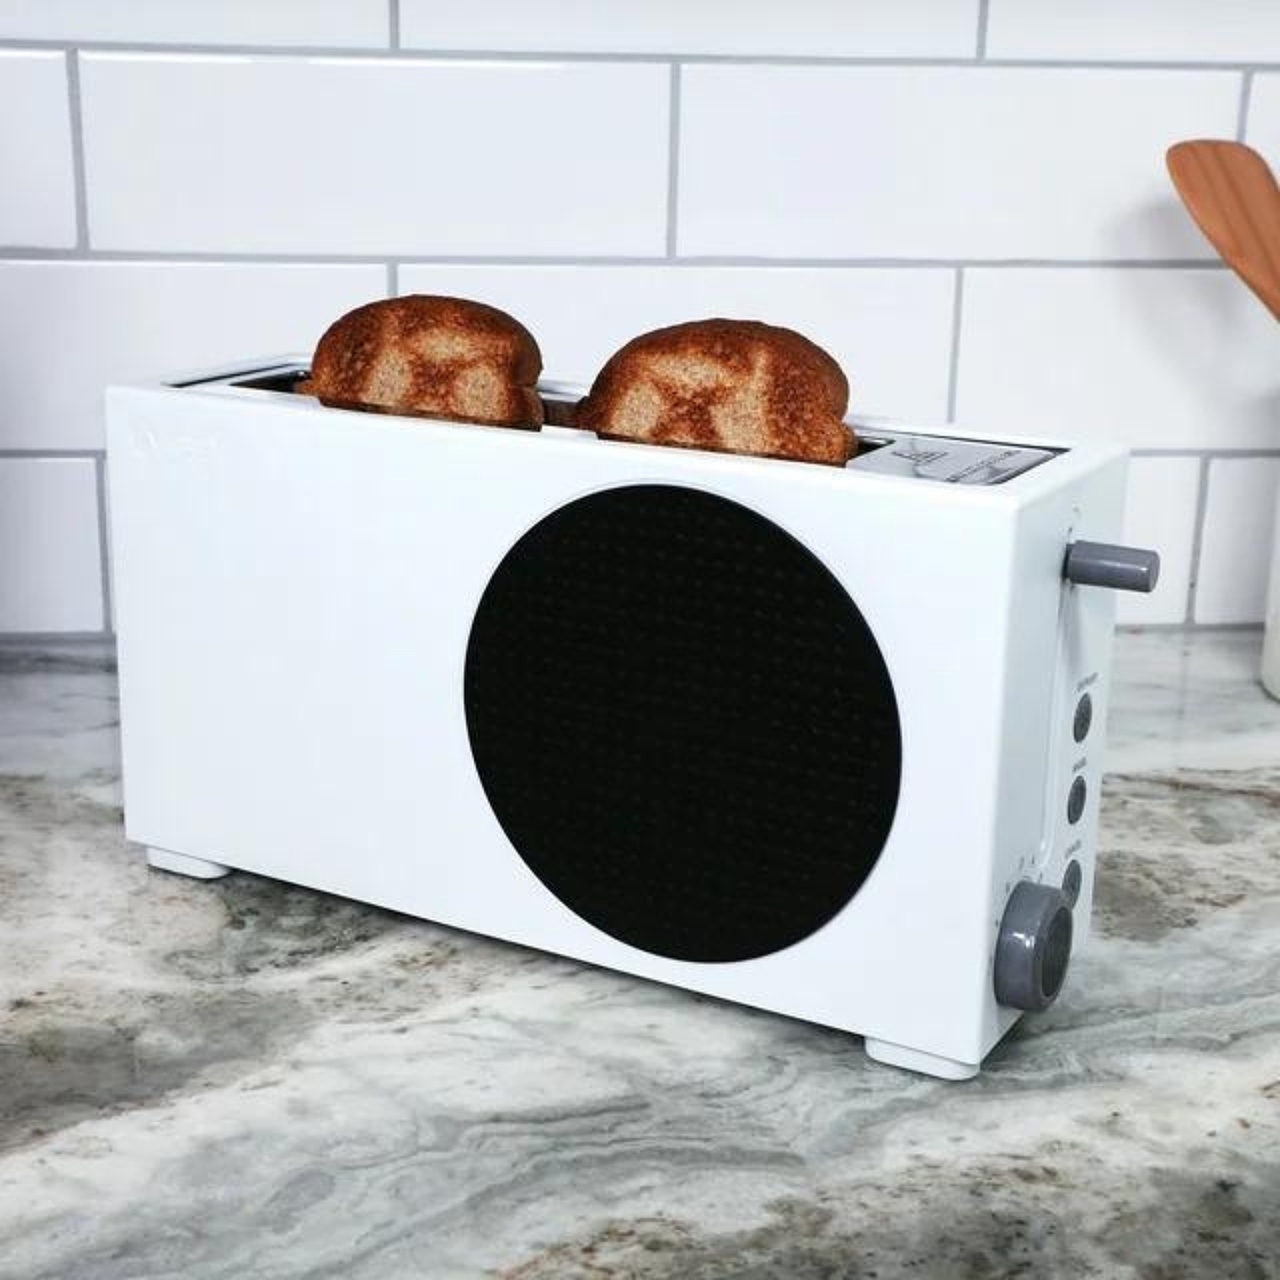 xbox，烤面包机，厨房家电，家用电器，